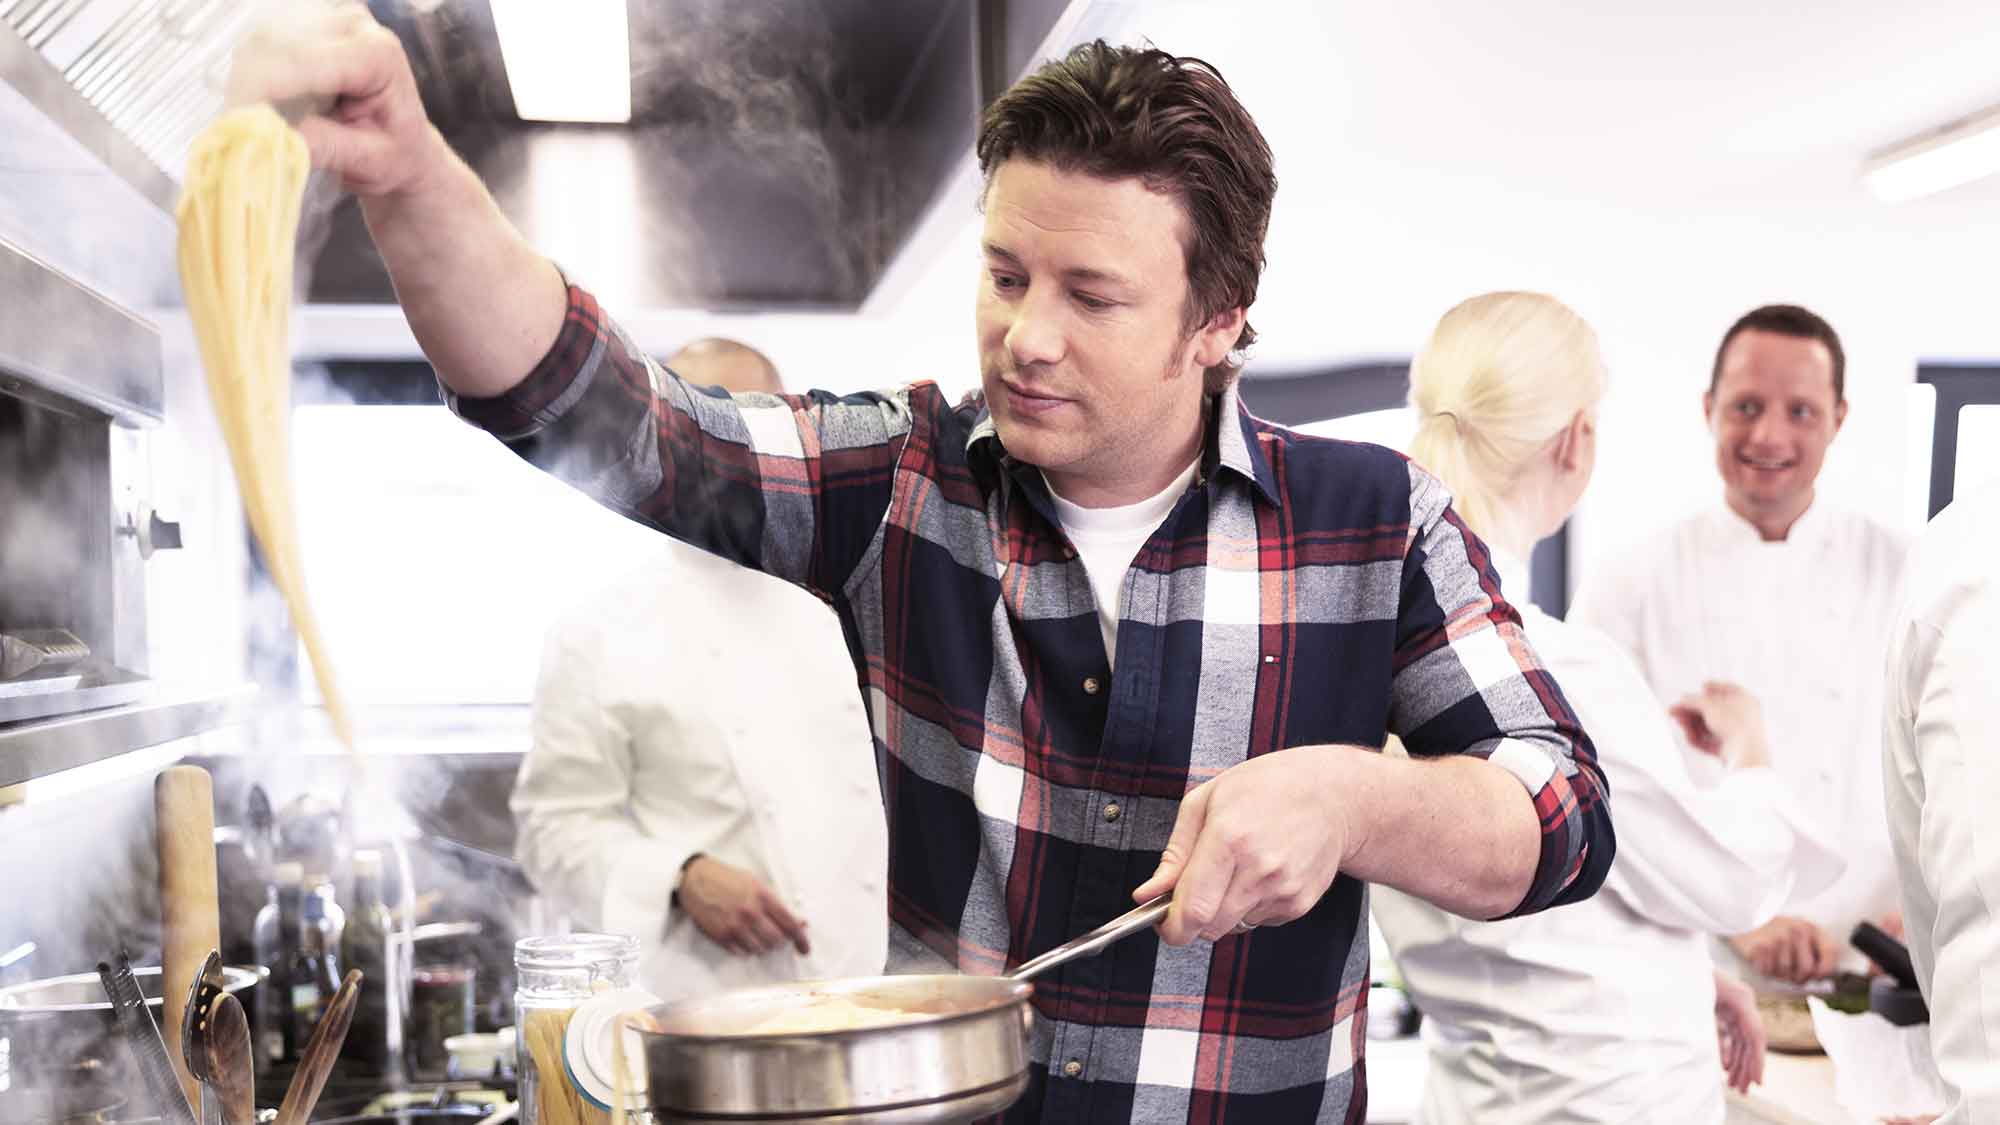 Willkommen, Jamie Oliver! RTL Deutschland startet exklusive Zusammenarbeit mit dem britischen TV Koch